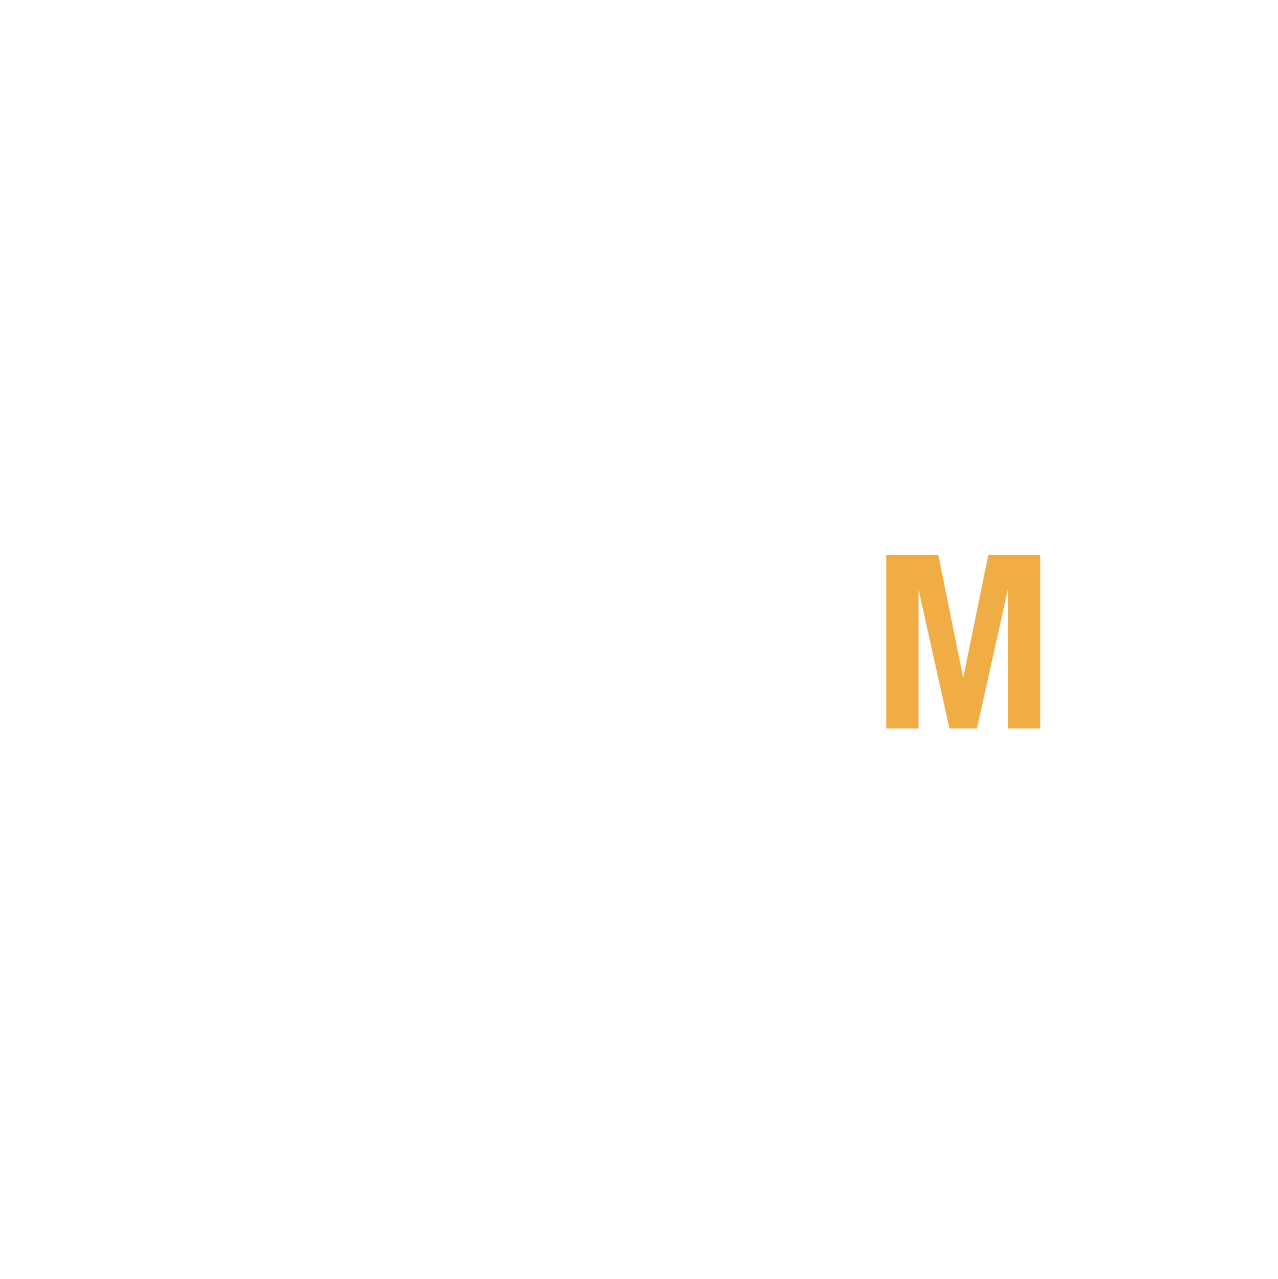 LMB_ost_logo_w_1